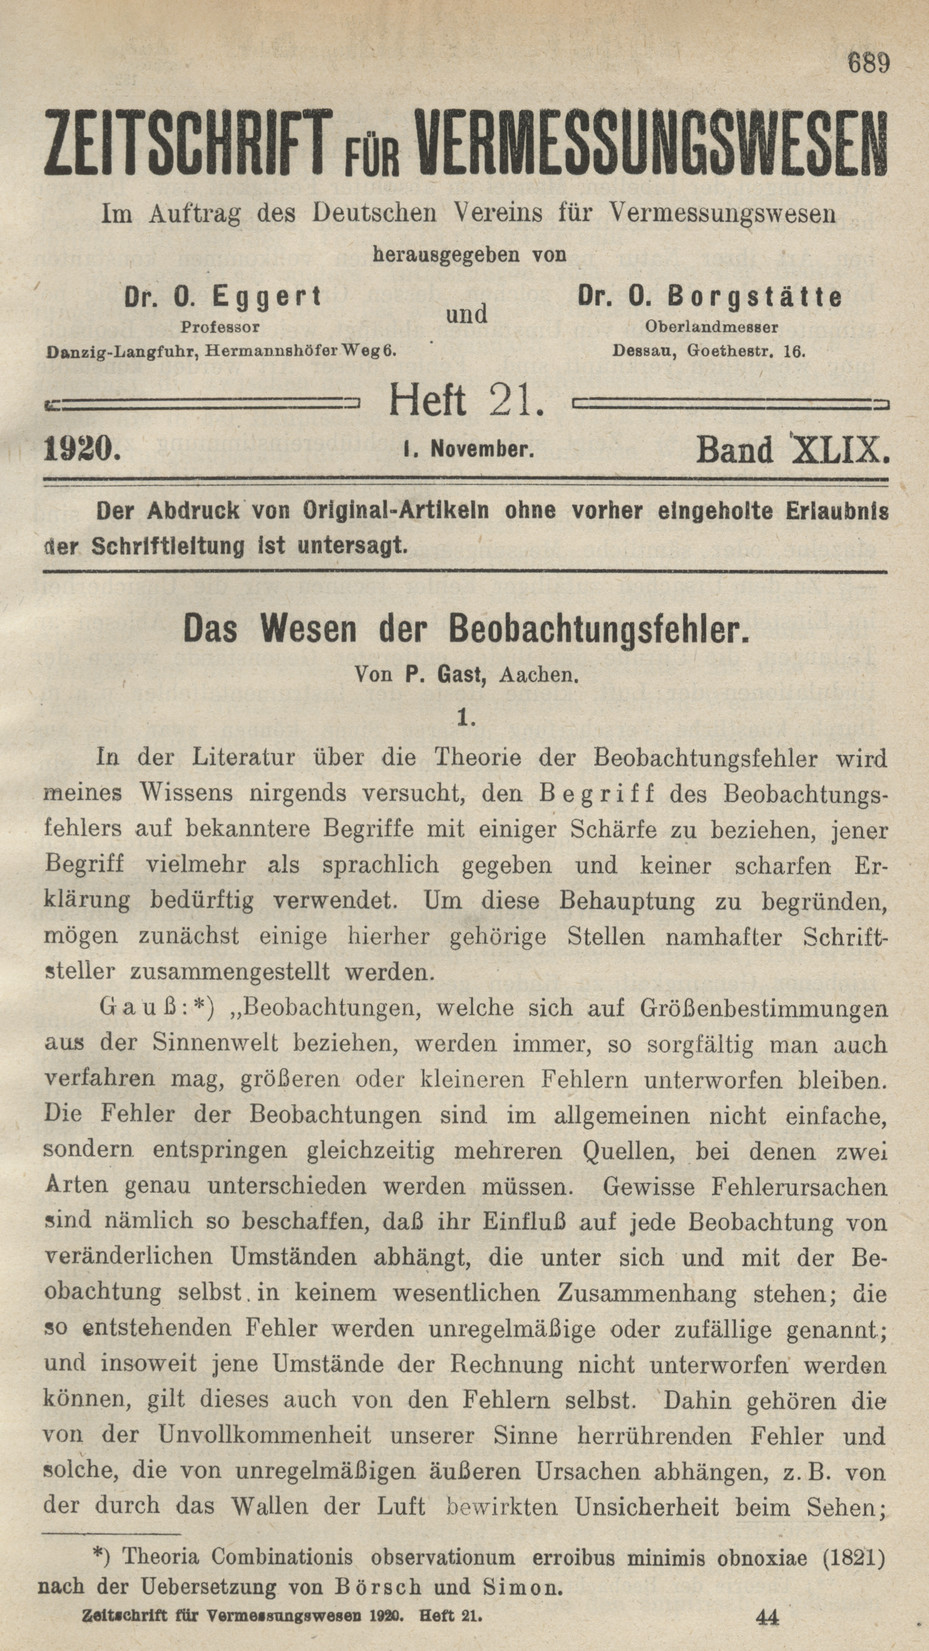 Zeitschrift für Vermessungswesen, Heft 21, Band XLIX